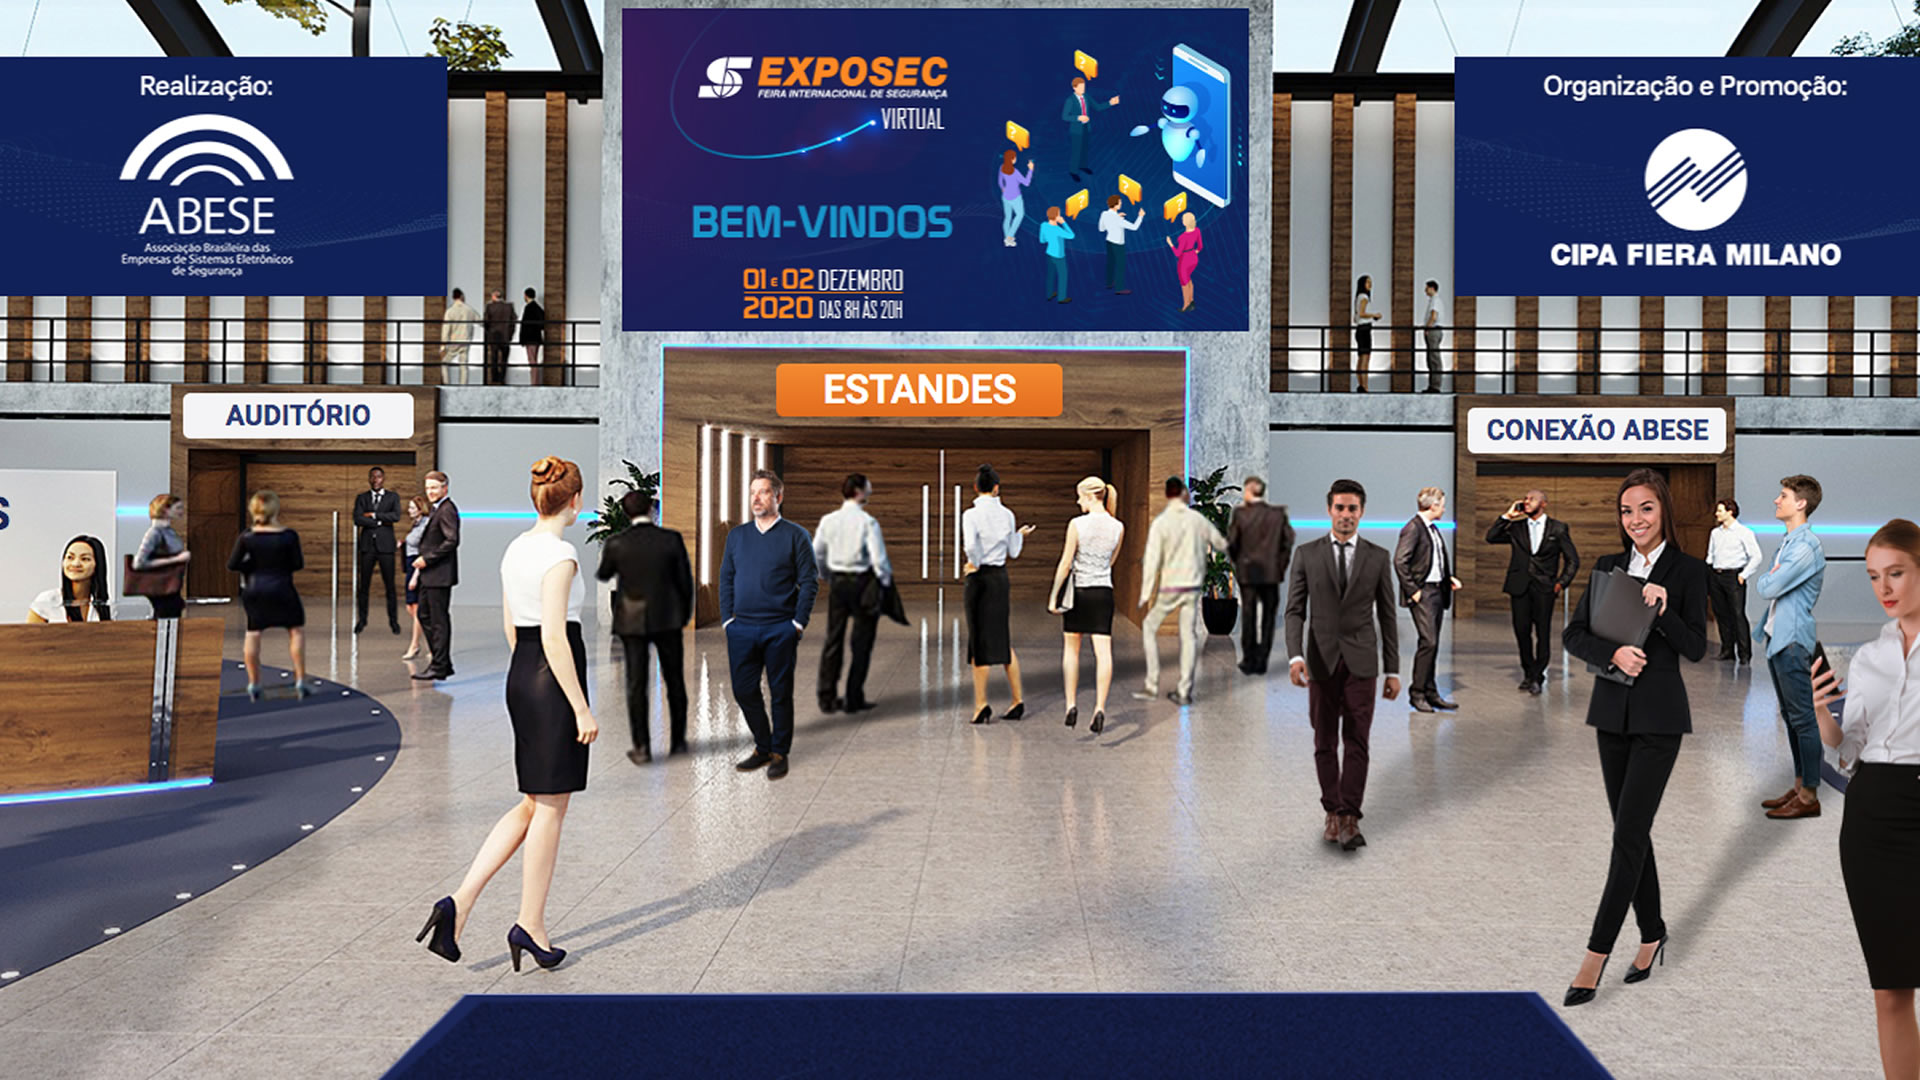 1ª Exposec Virtual 2020, Feira Internacional de Segurança, traz uma proposta inovadora ao setor